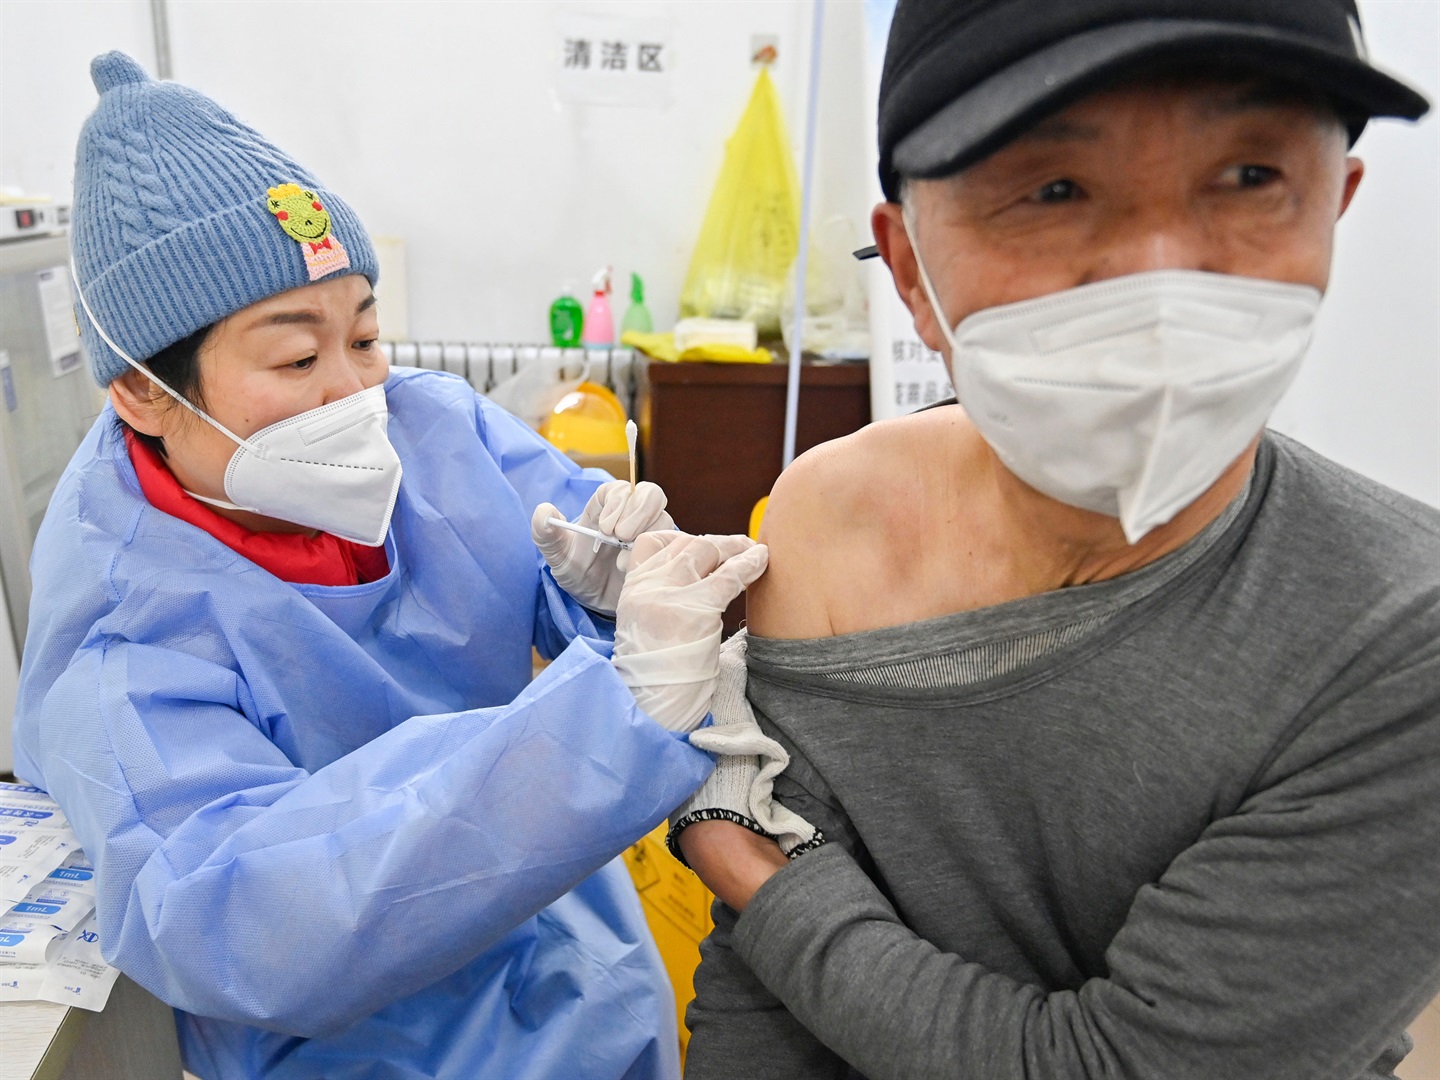 Güney Koreli aşı üreticisi, Çin'in "ulusal gurur" nedeniyle Kovid ile savaşmak için yabancı aşıları kullanmayacağını söyledi